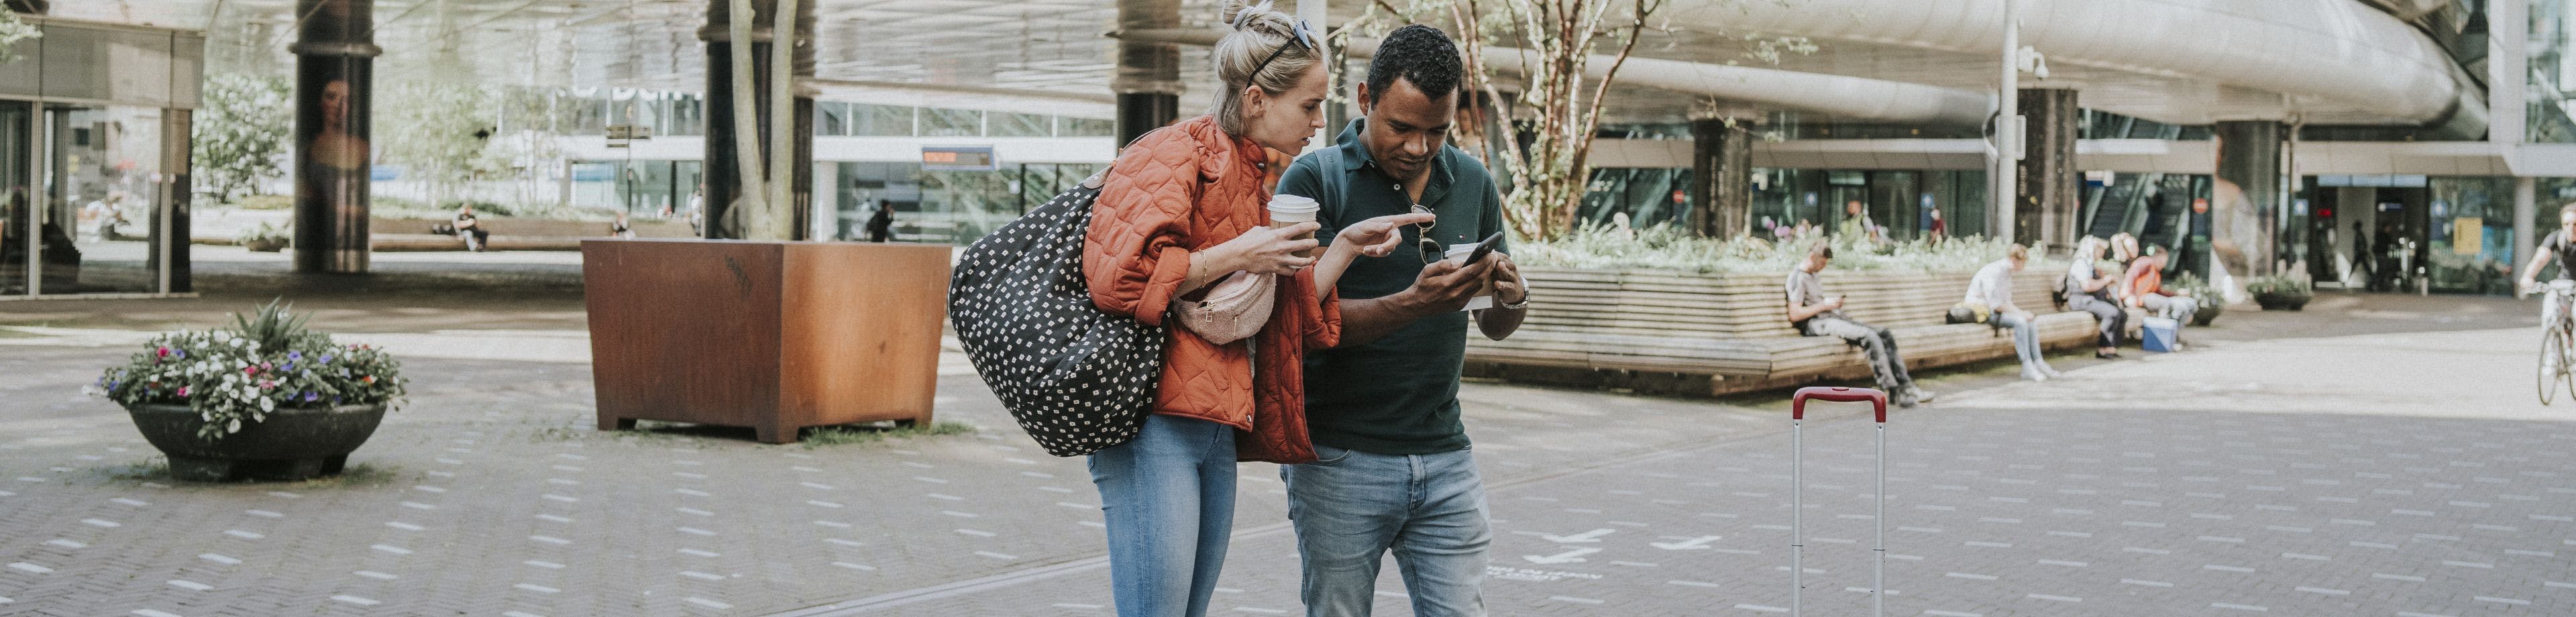 Een stel staat op een stationsplein aan het begin van een reis. Ze kijken samen naar het scherm van een mobiele telefoon ter voorbereiding op hun reis.